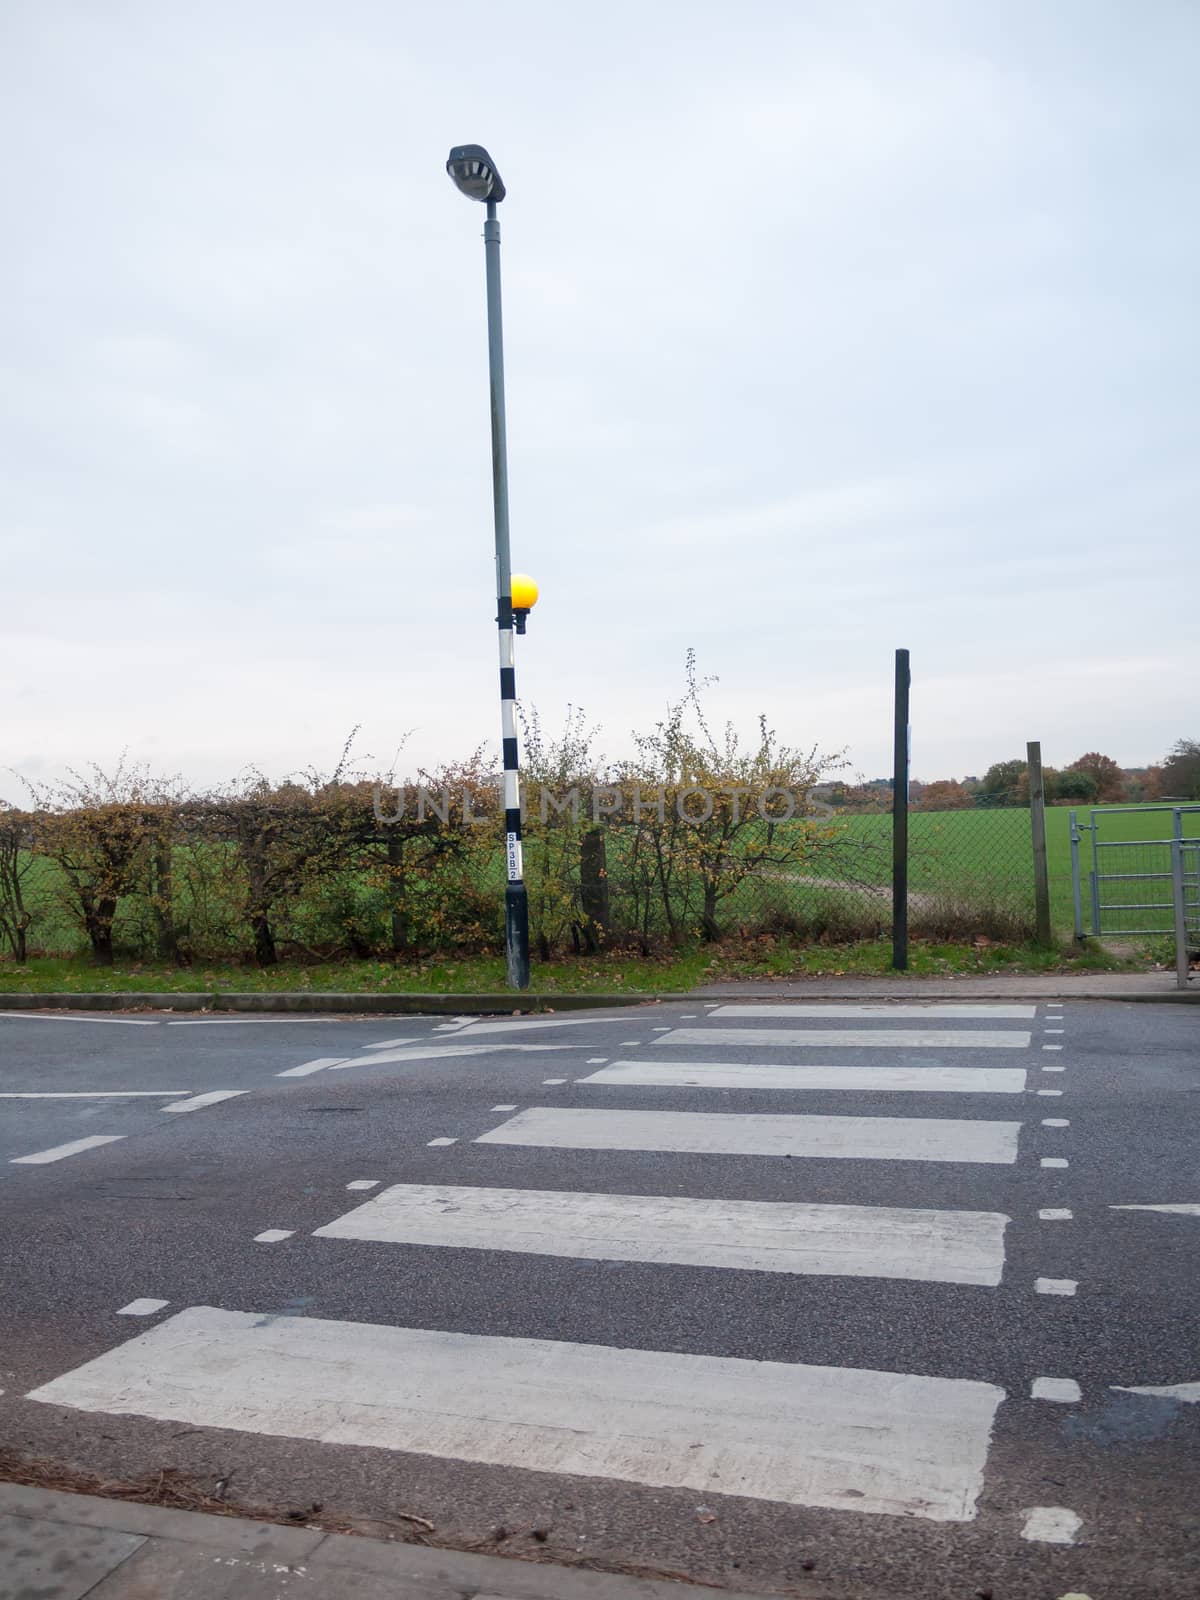 clear road zebra crossing road outside pole street lamp; essex; england; uk